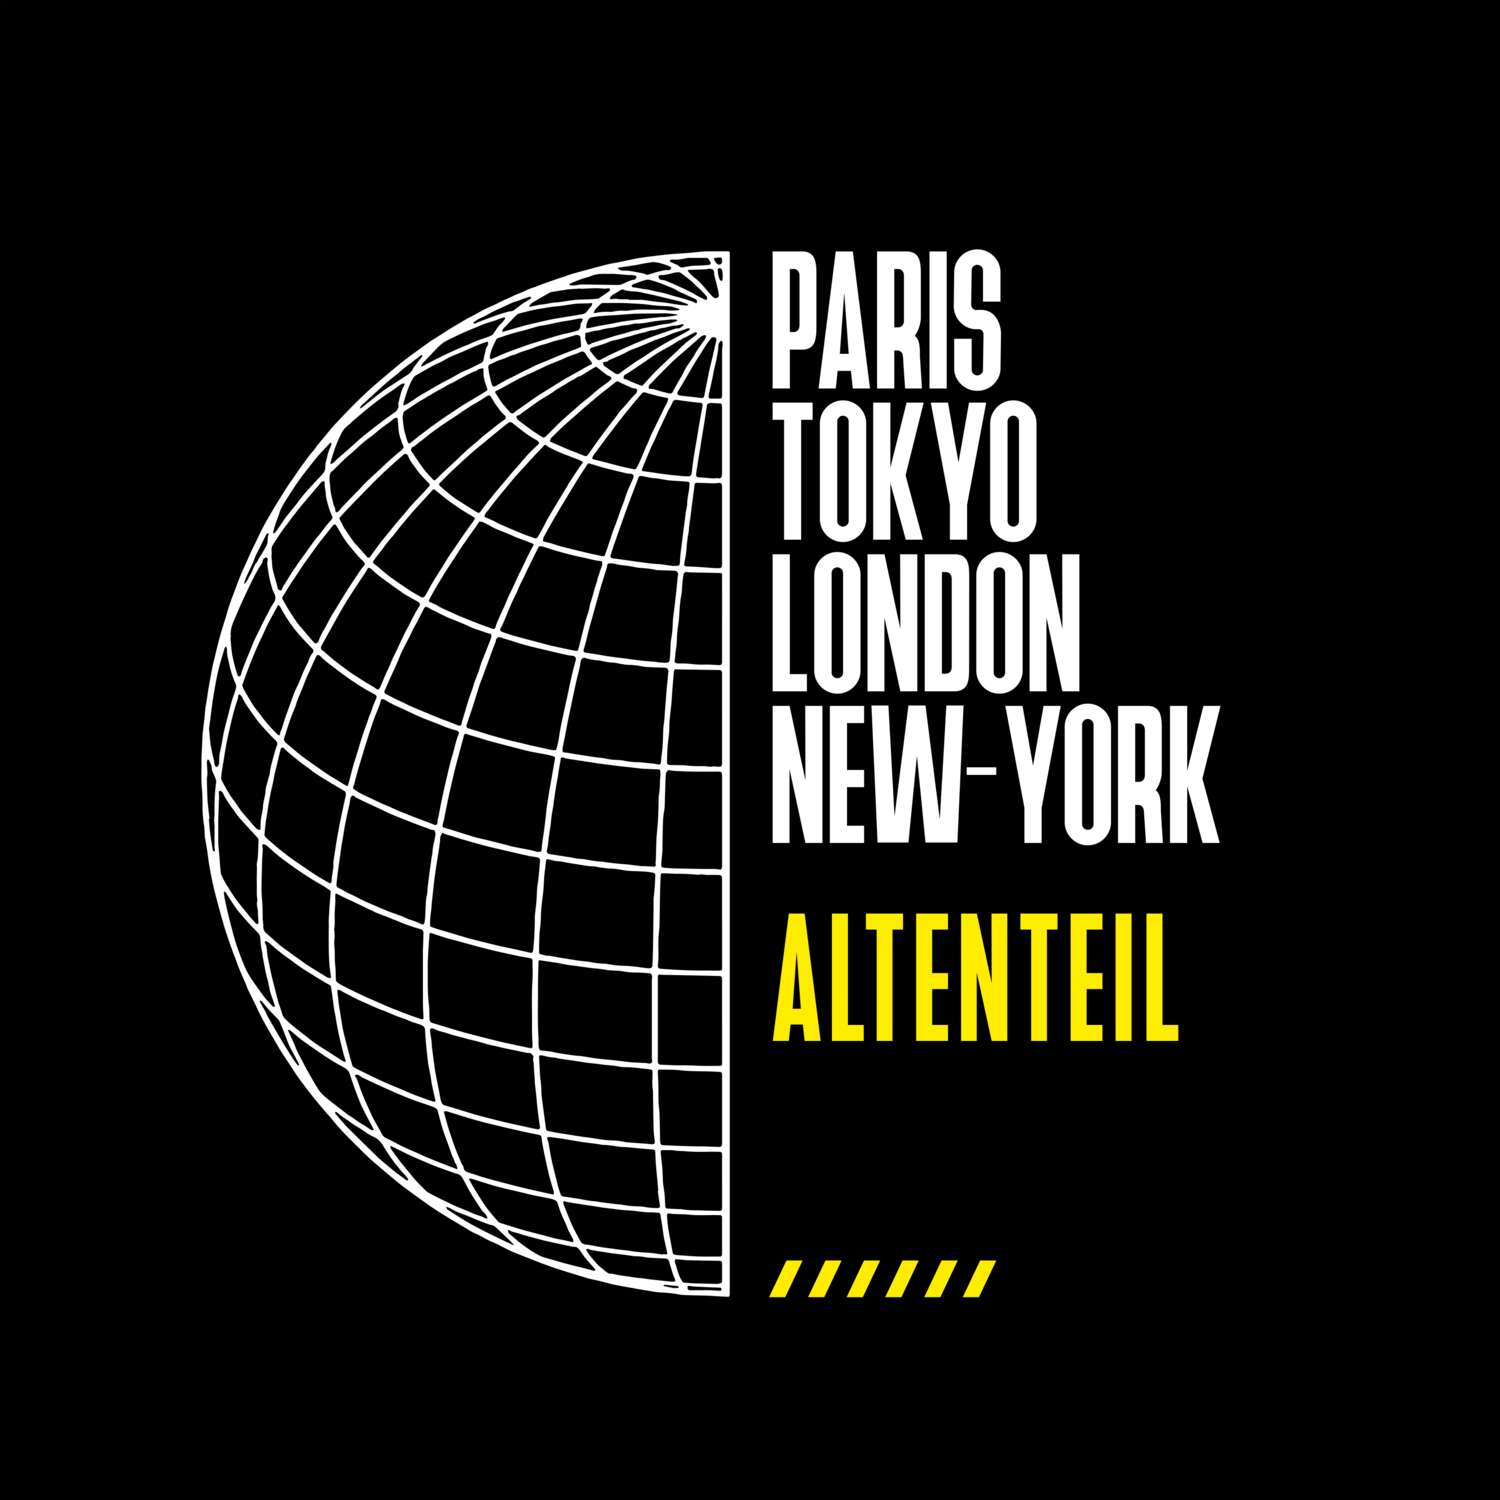 Altenteil T-Shirt »Paris Tokyo London«